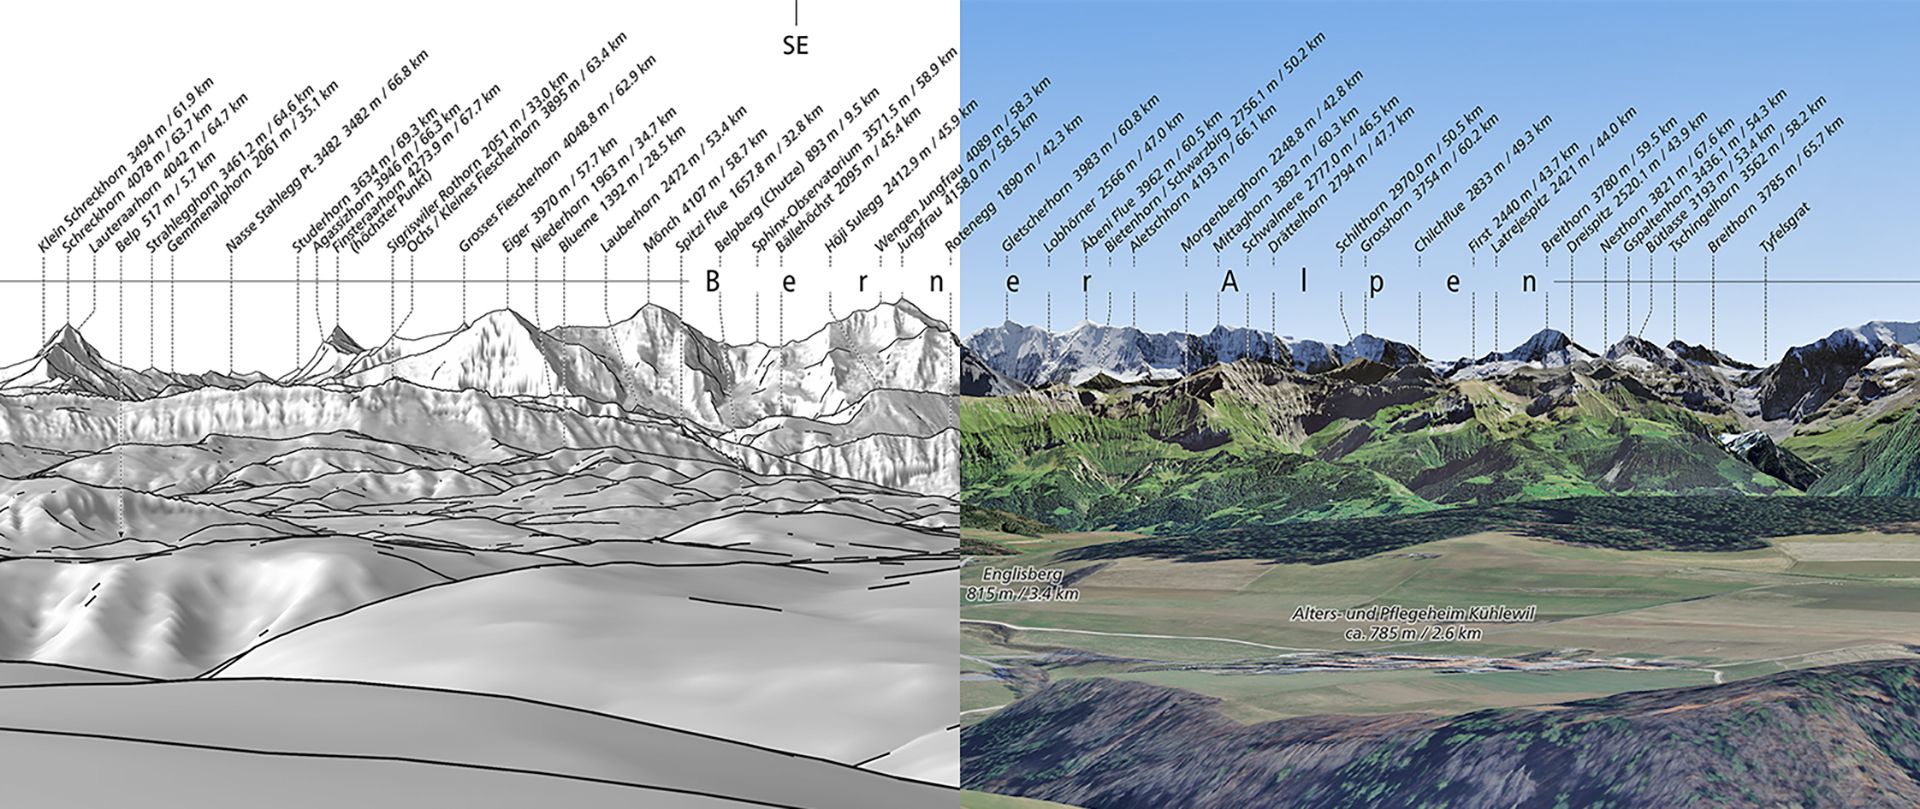 Il collage mostra due varianti di prodotto di un DIGIRAMA Deluxe. A sinistra come immagine in scala di grigi e a destra un'immagine panoramica sovrapposta a un'ortofoto.